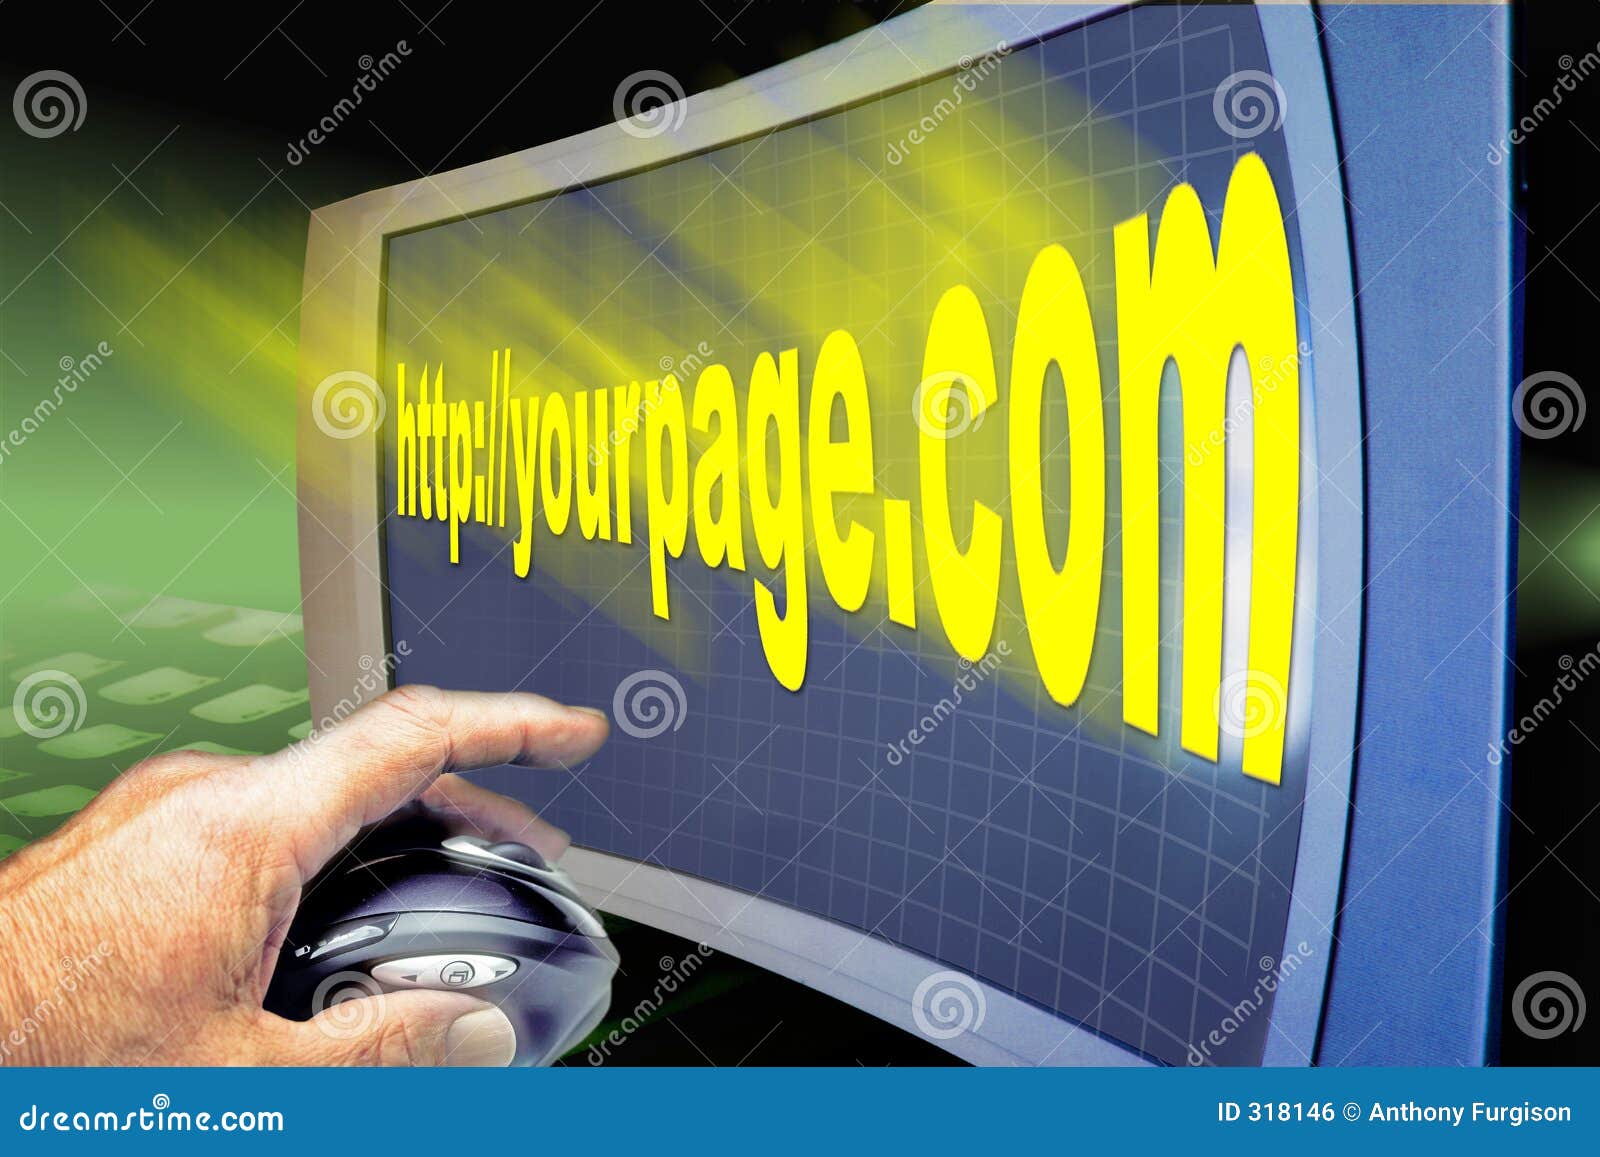 www web internet http screen